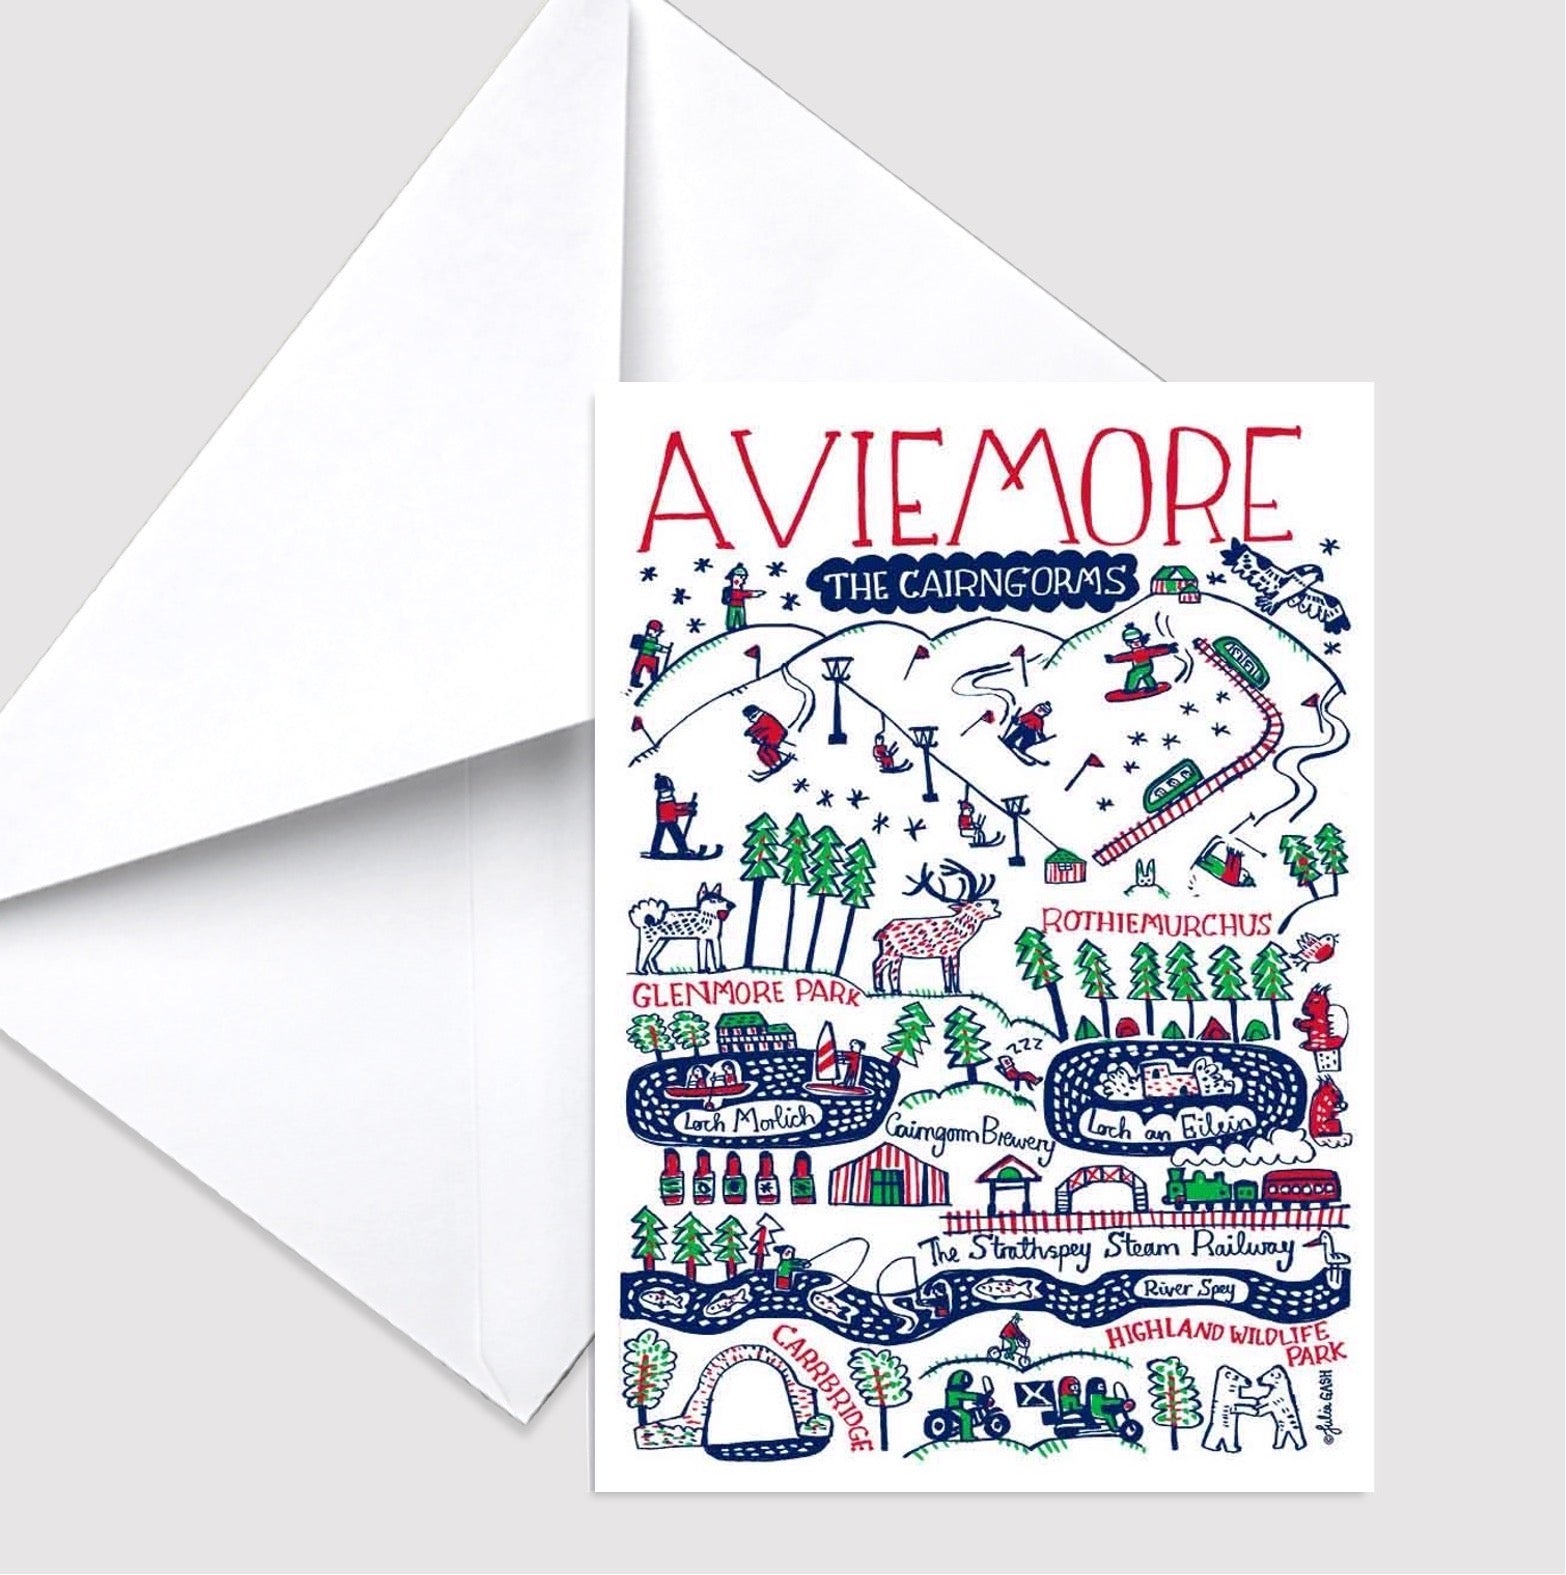 Aviemore Greeting Card - Julia Gash